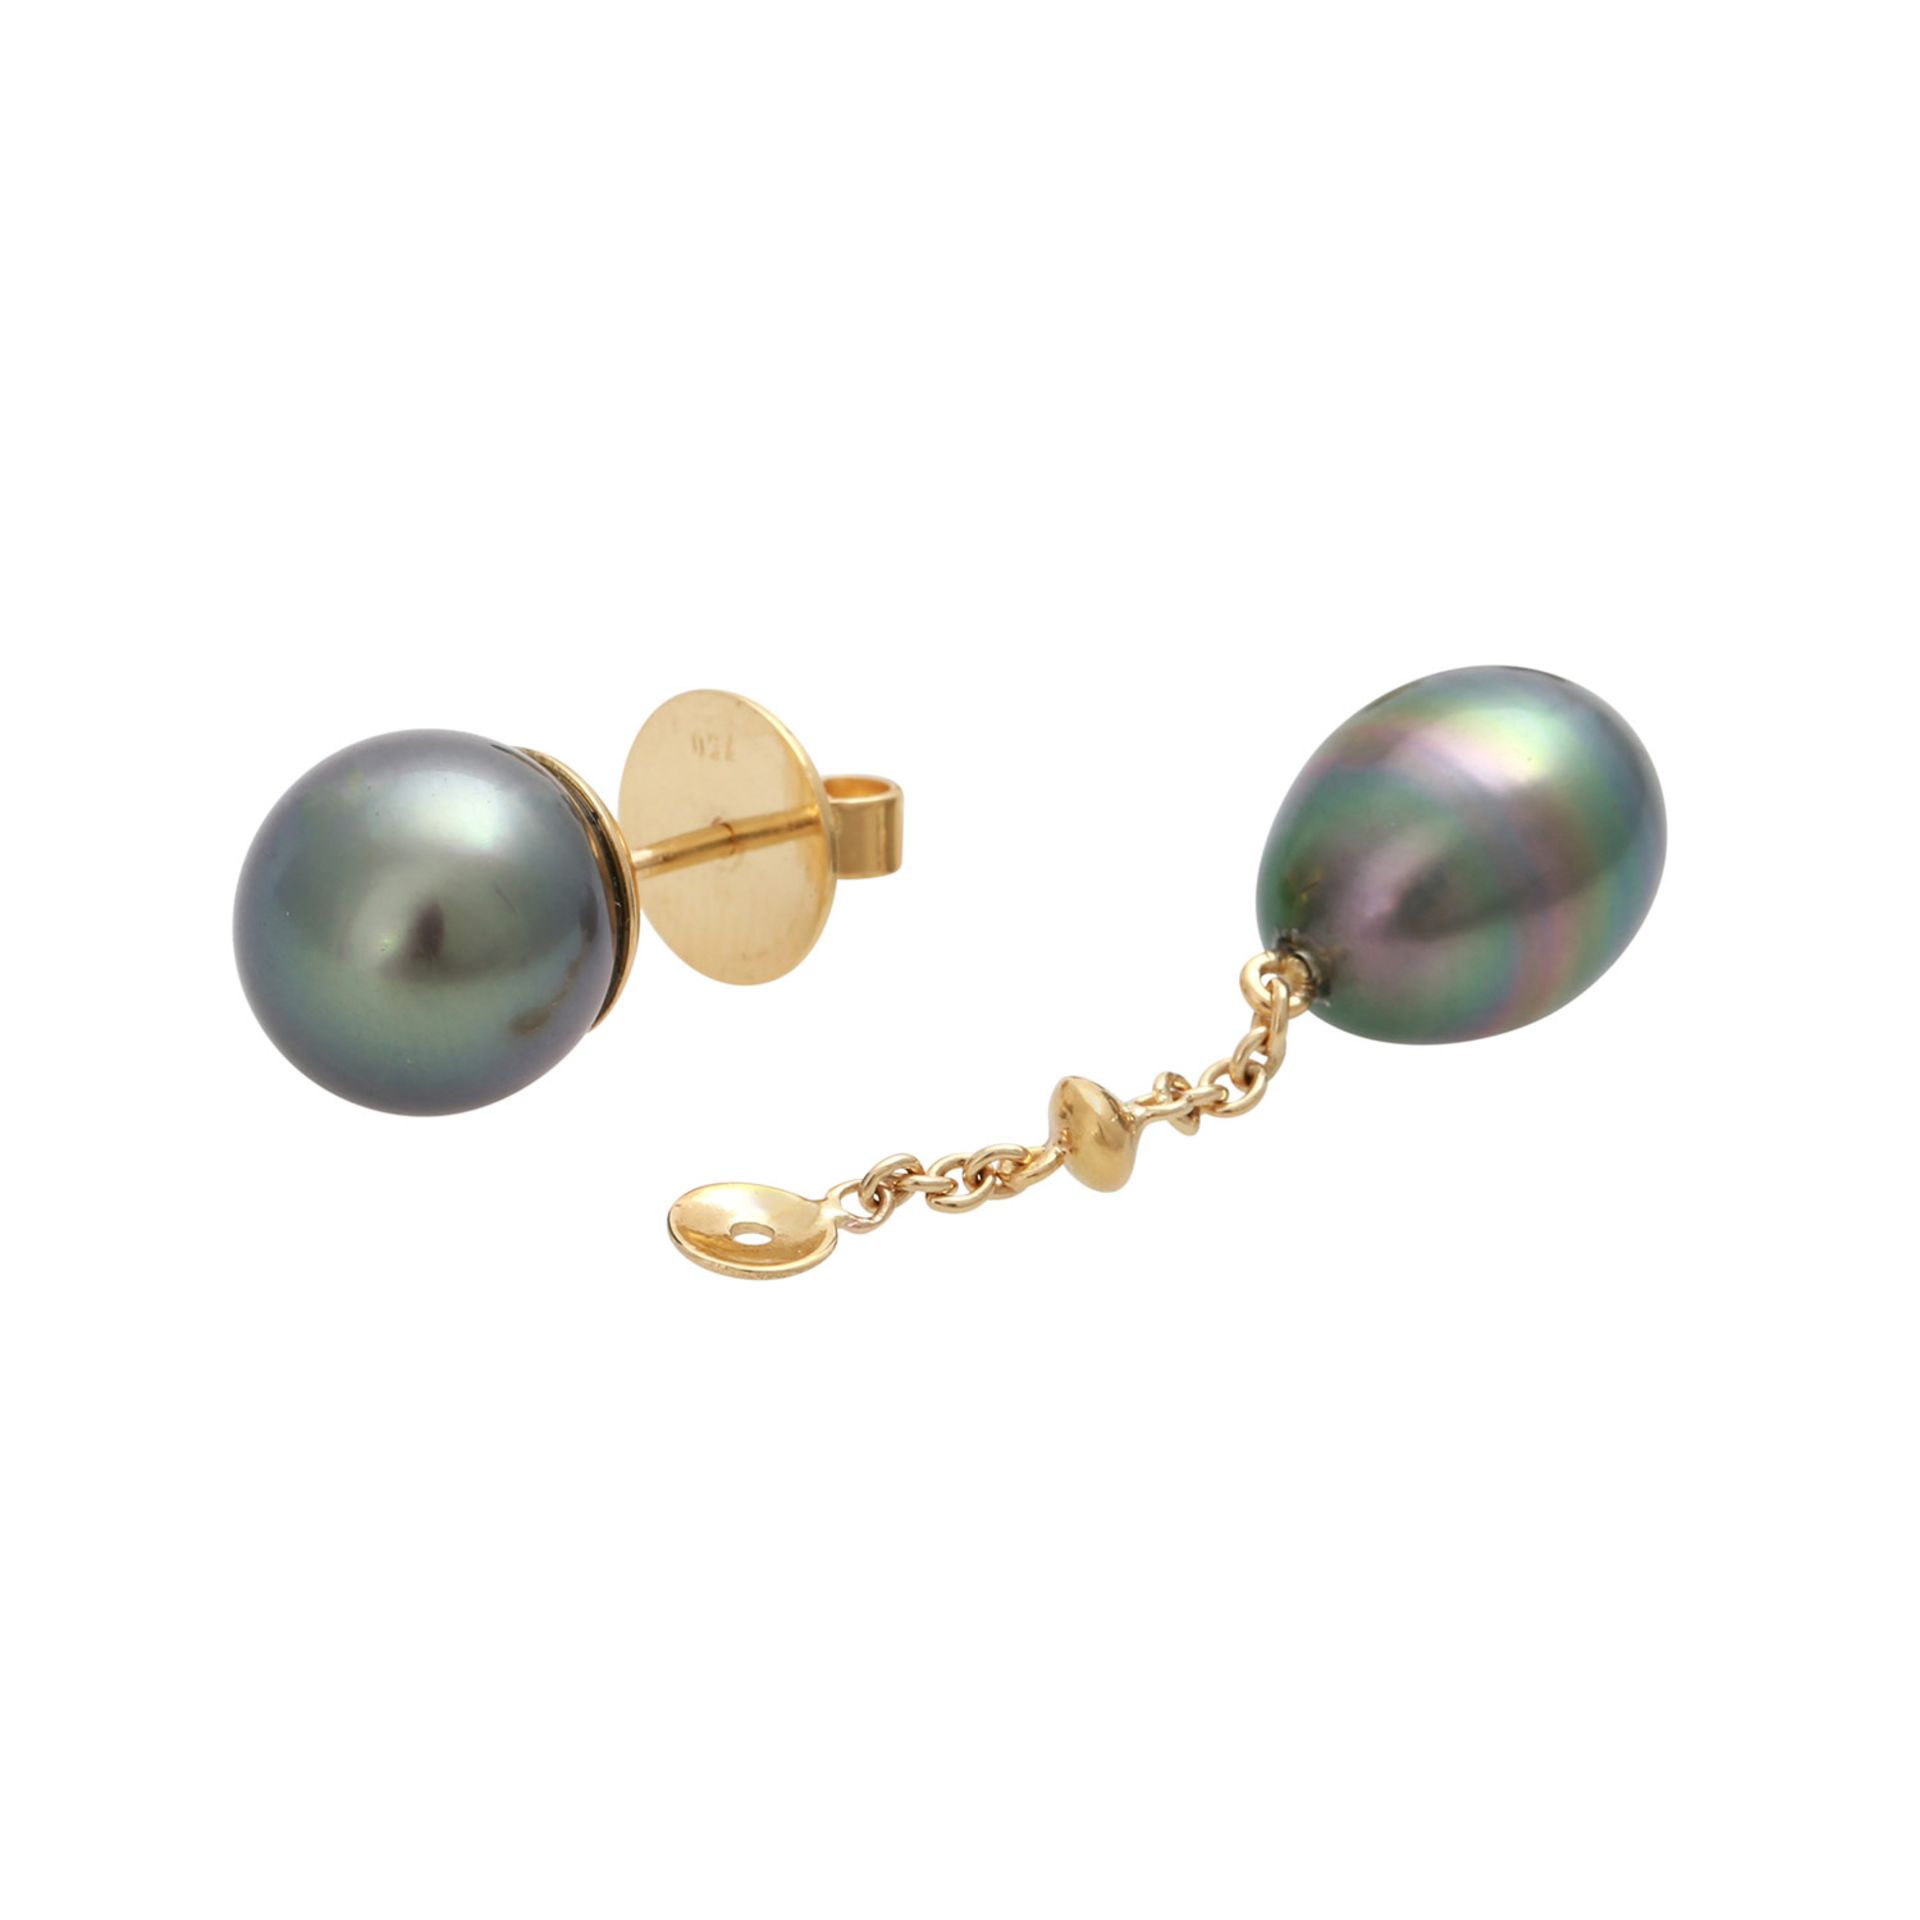 Ohrstecker mit Tahitizuchtperlenmit abnehmbaren Abhängern, GG 18K, runde Perlen ca. 10 mm, - Image 5 of 5